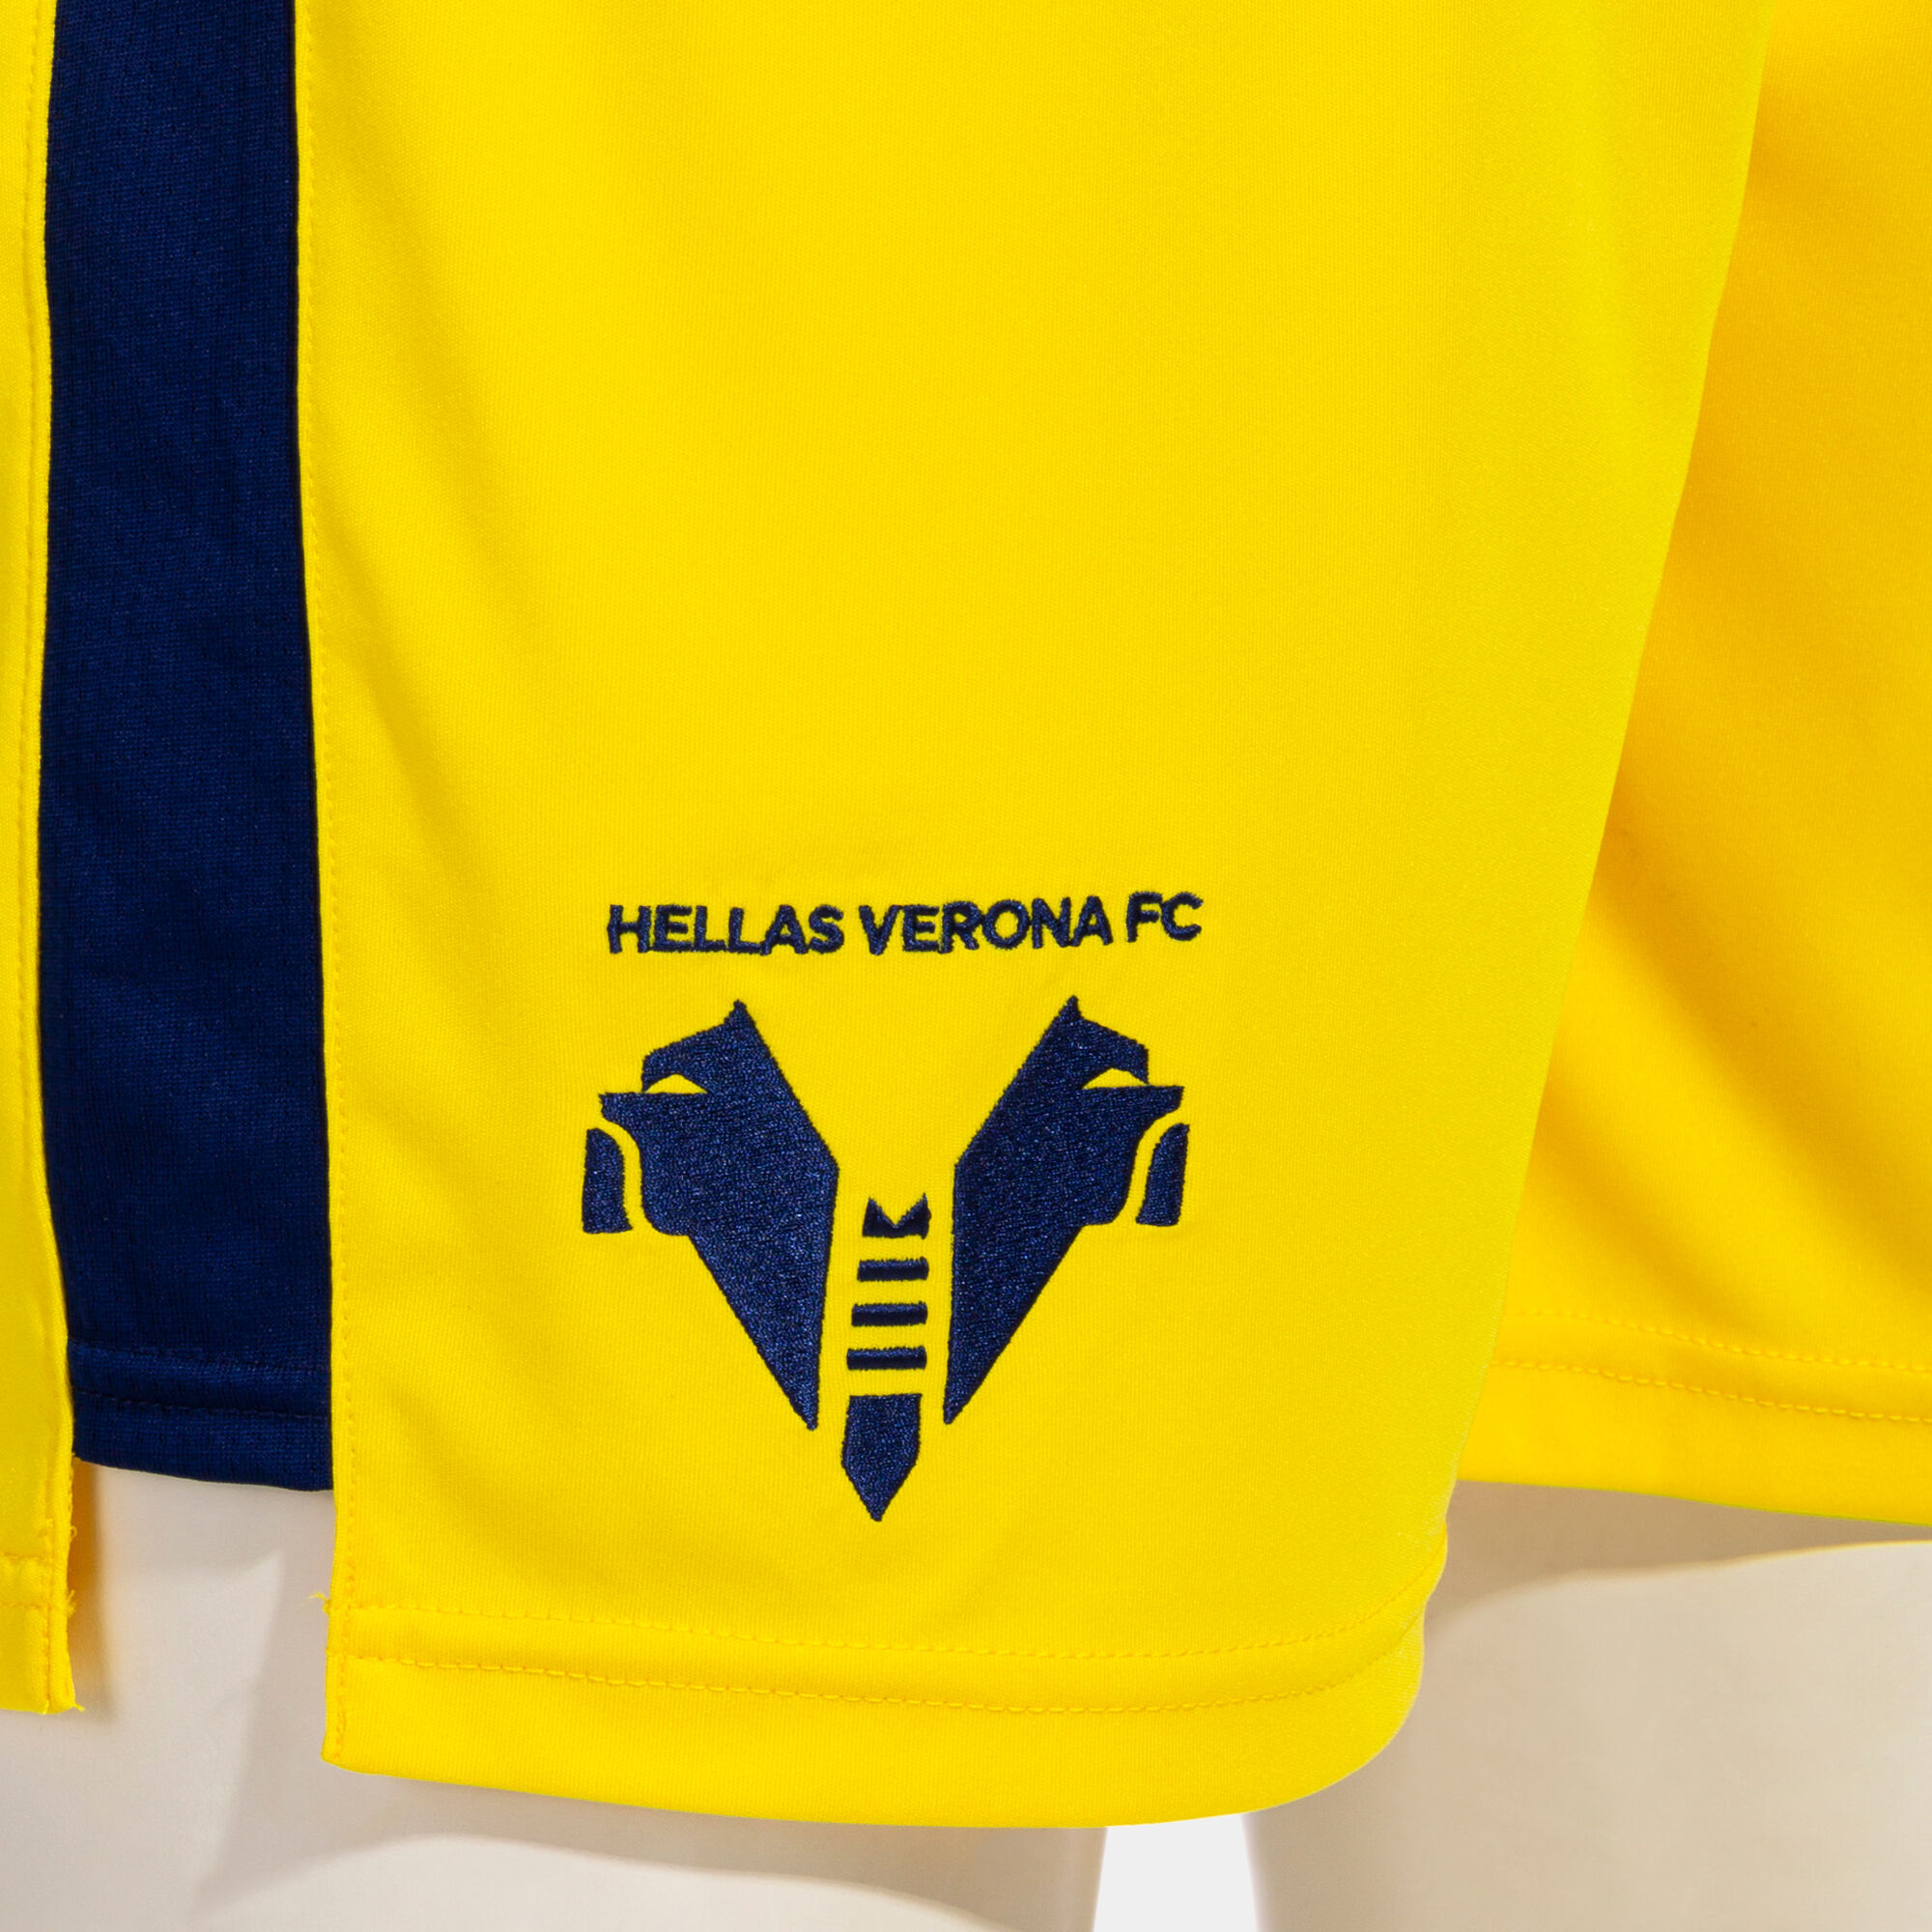 SHORT COMP. OFI. HELLAS VERONA FC